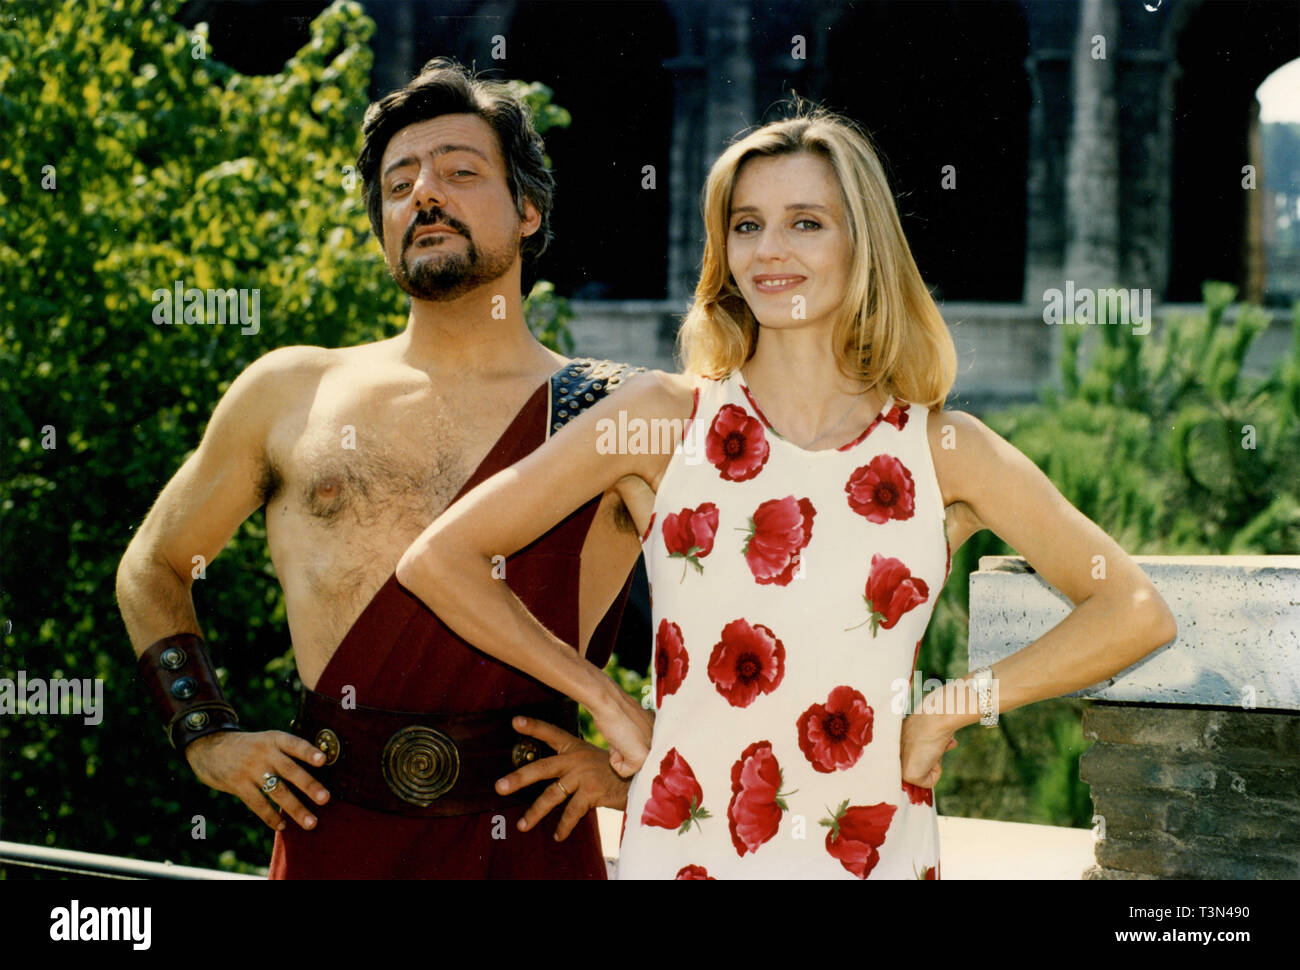 Actores Piermaria Cecchini y Eliana Miglio en la película Boom, 1990 Foto de stock